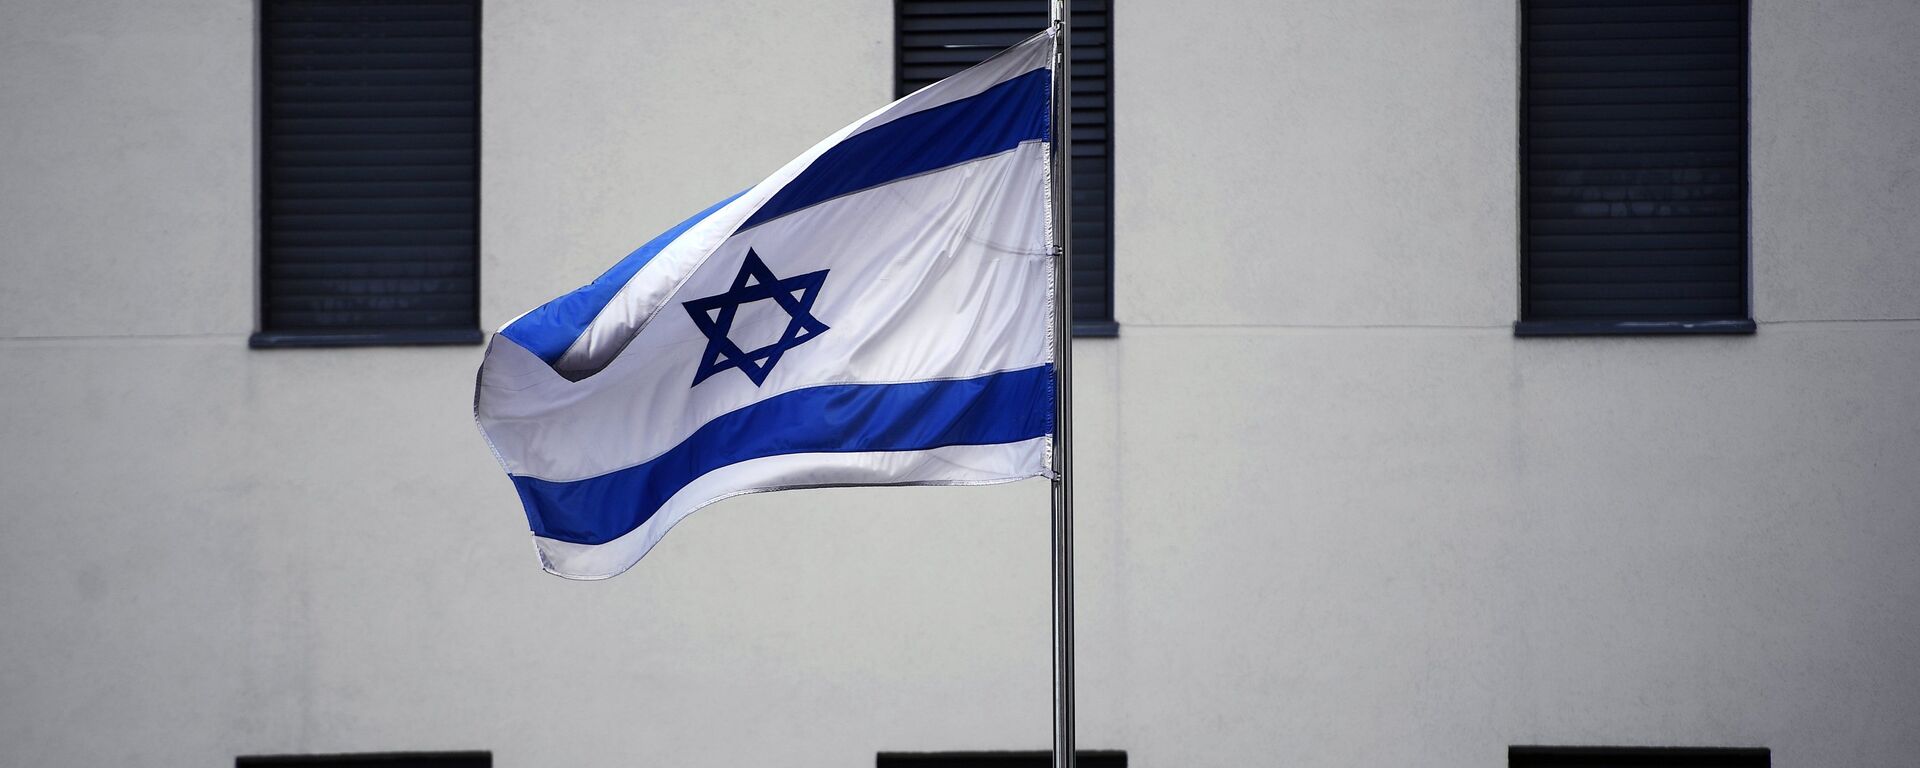 Bandera de Israel en el edificio de la Embajada israelí en Moscú (archivo) - Sputnik Mundo, 1920, 18.03.2021